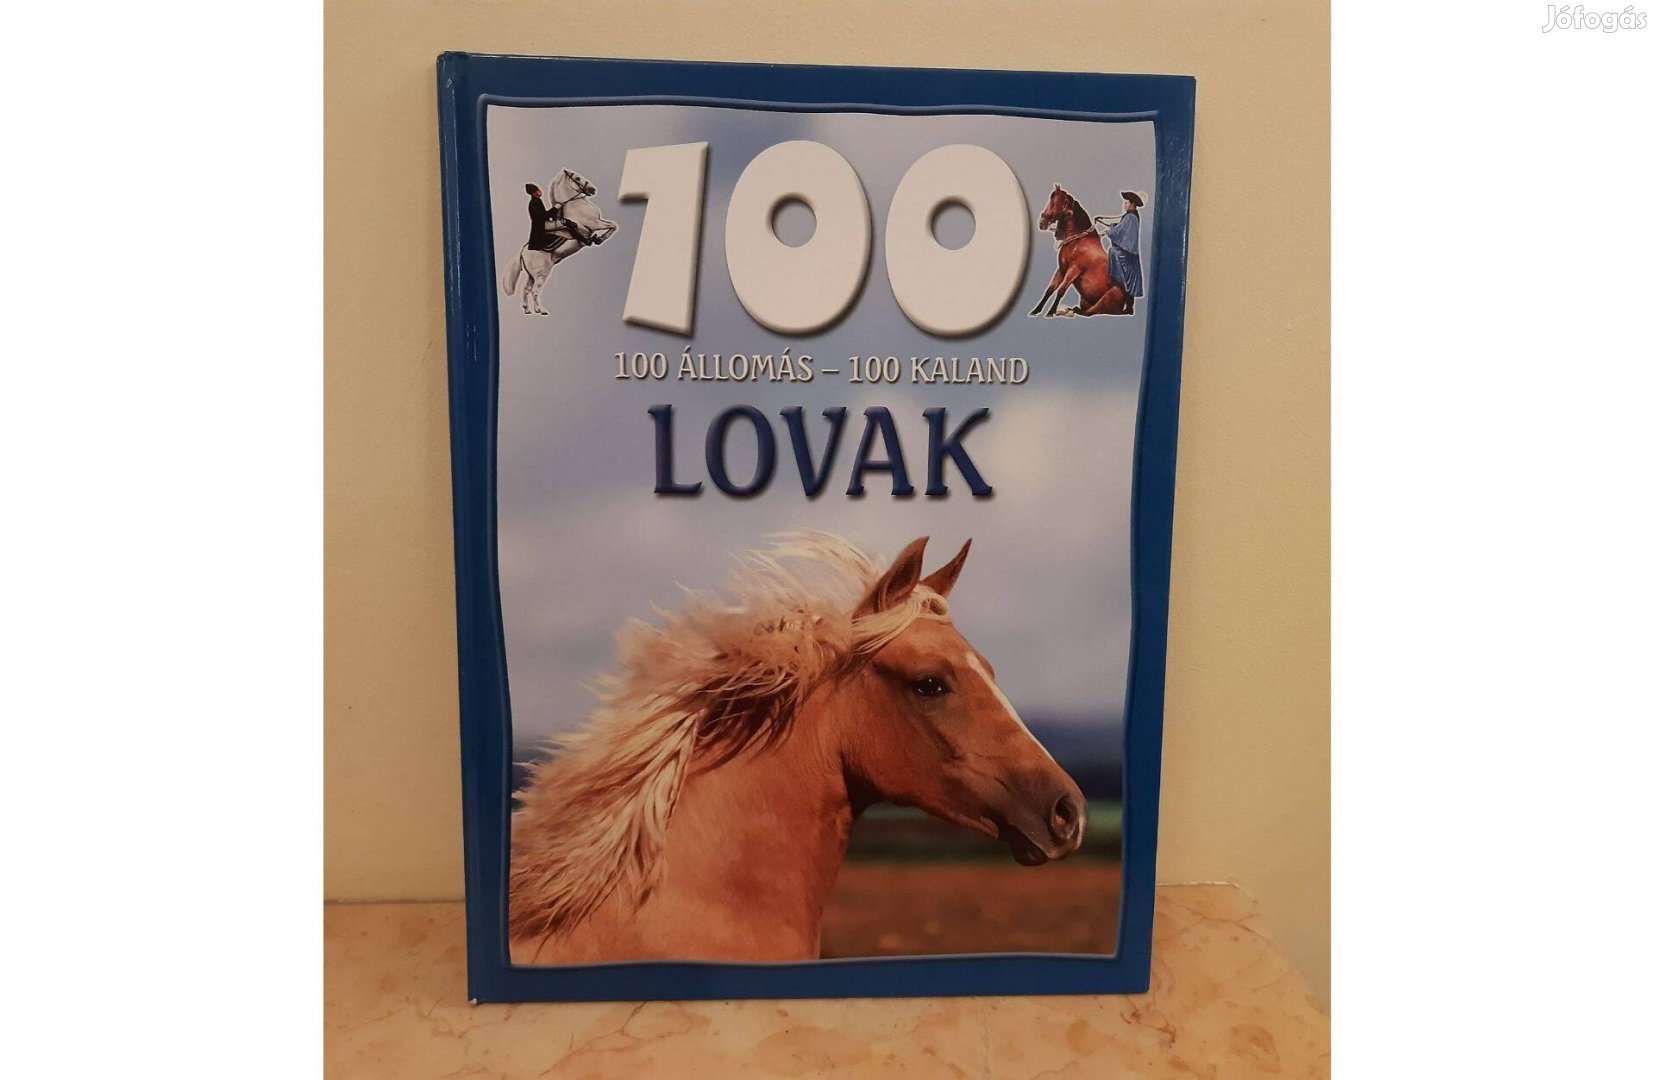 100 állomás - 100 kaland sorozat - Lovak / Kutyák / Repülés - új könyv